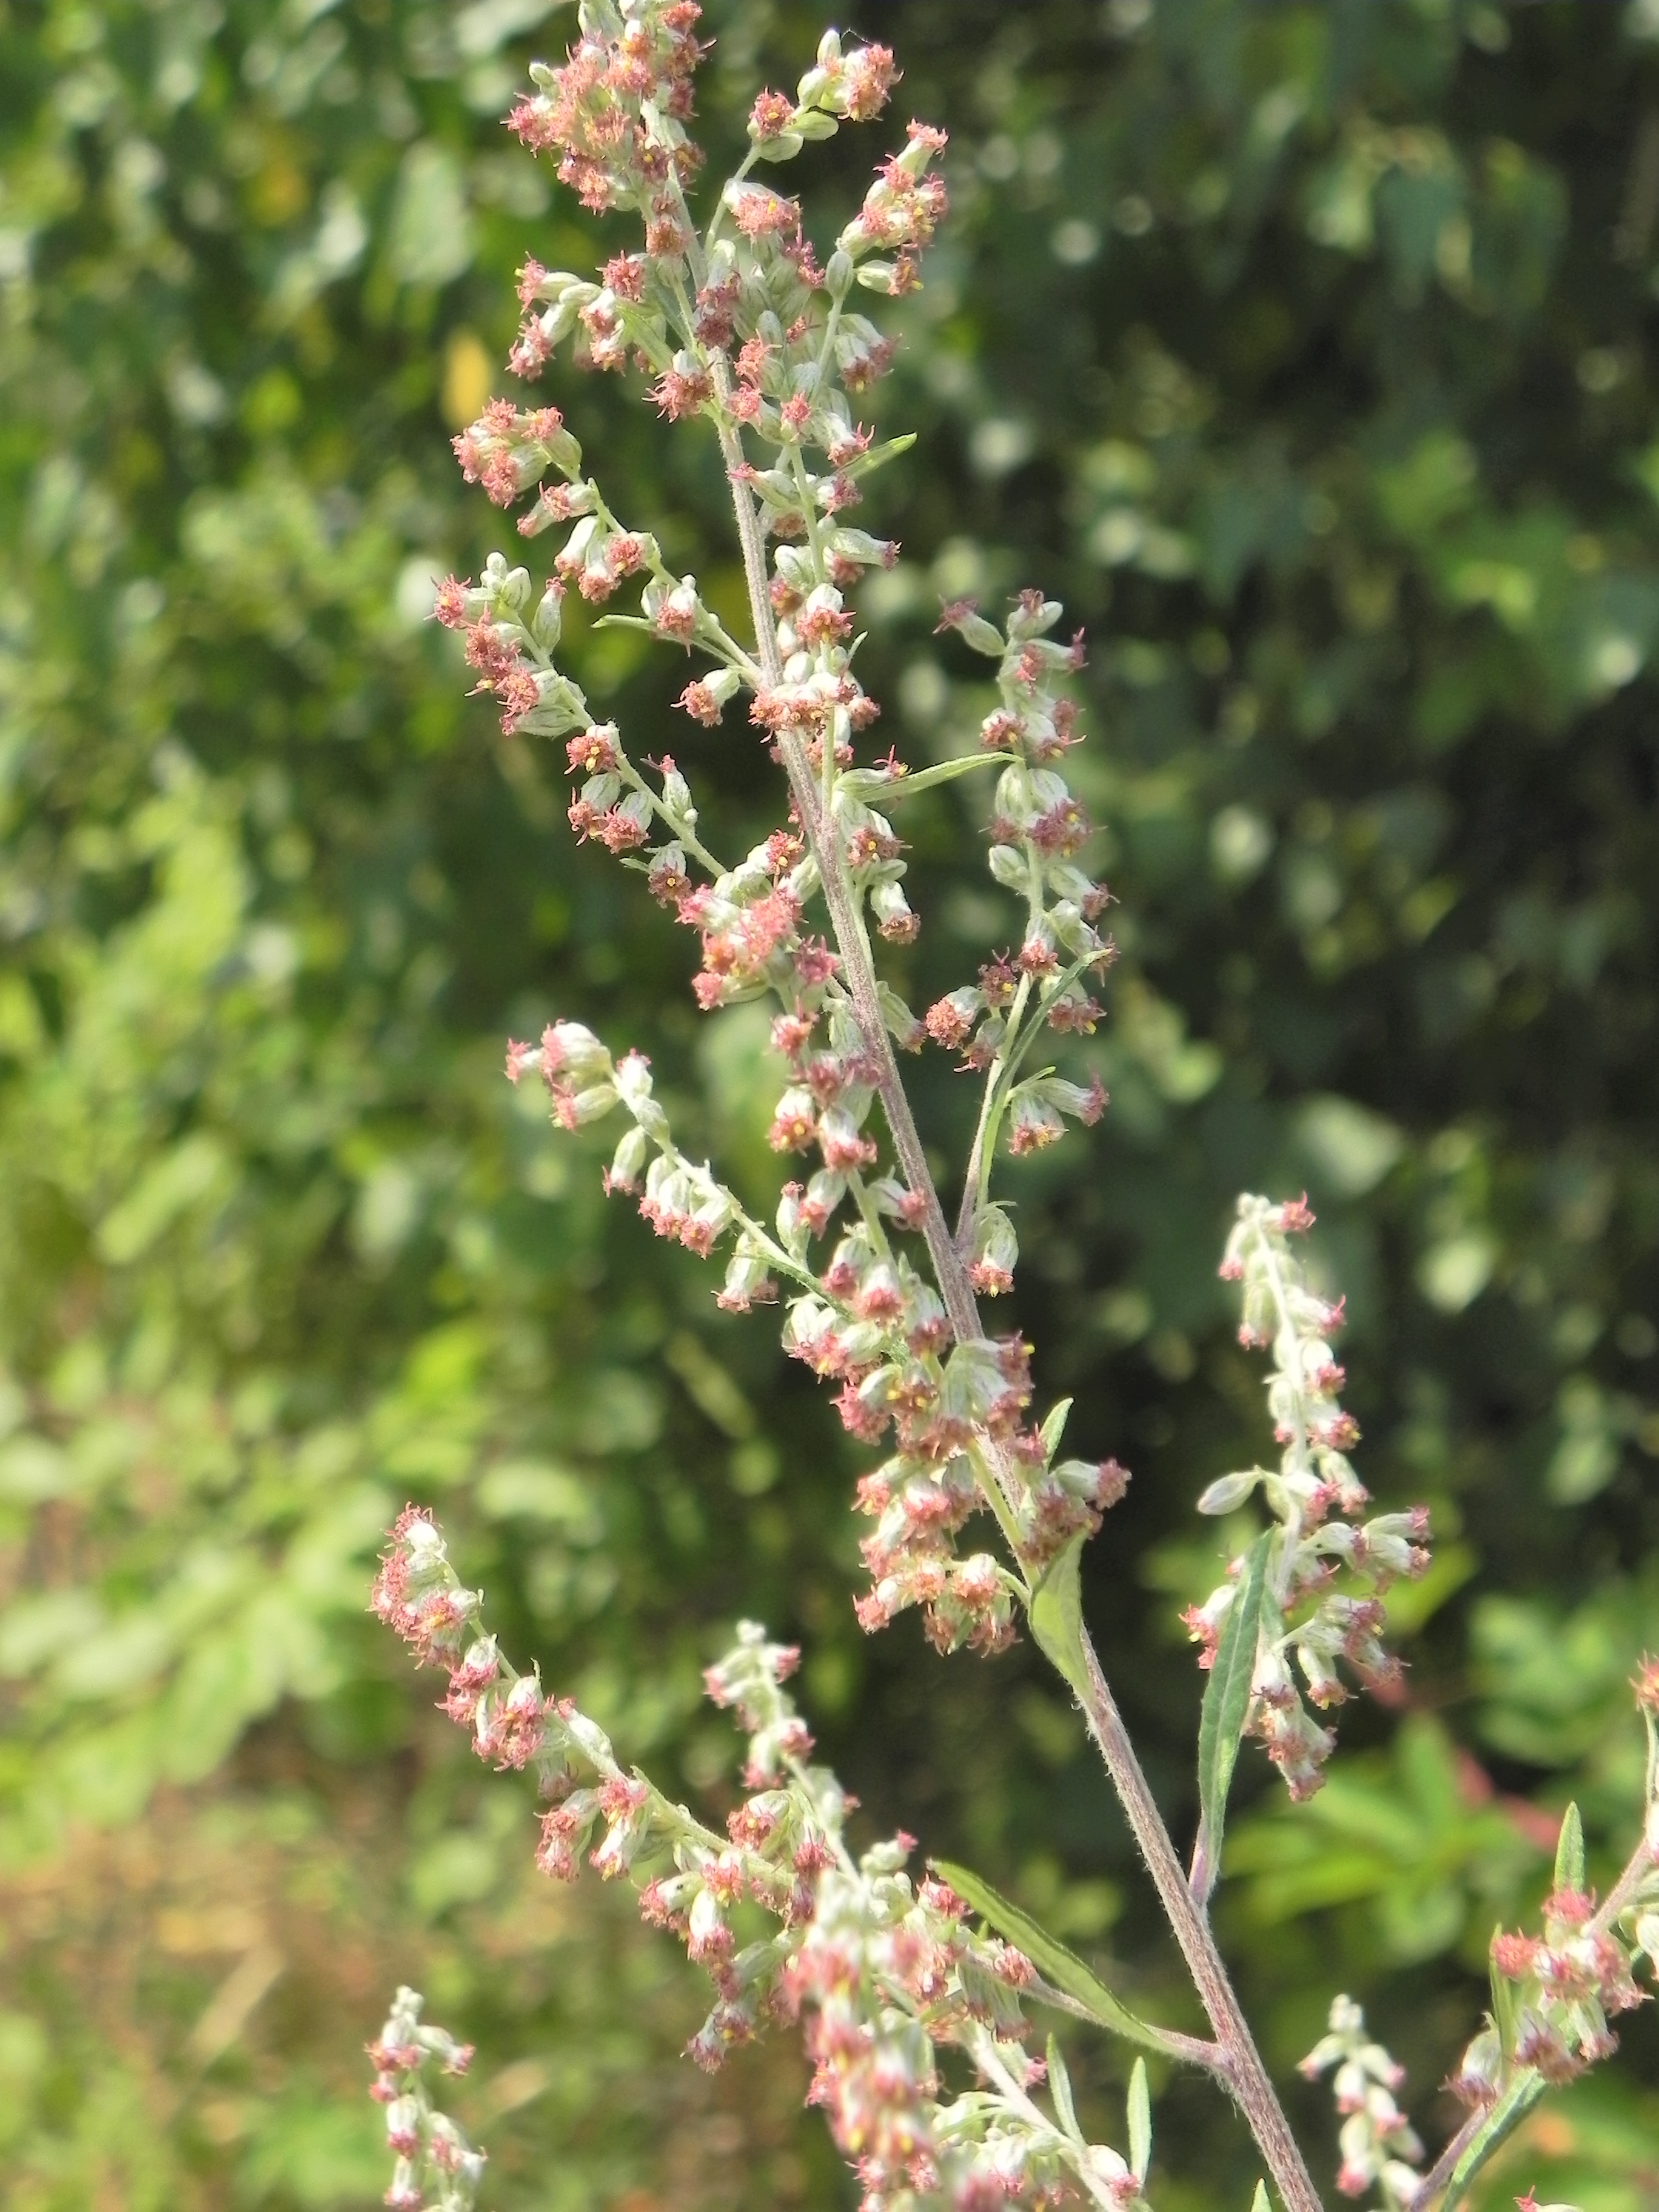 Sehr häufig mit Ambrosia verwechselt: Gemeiner Beifuß (Artemisia vulgaris)